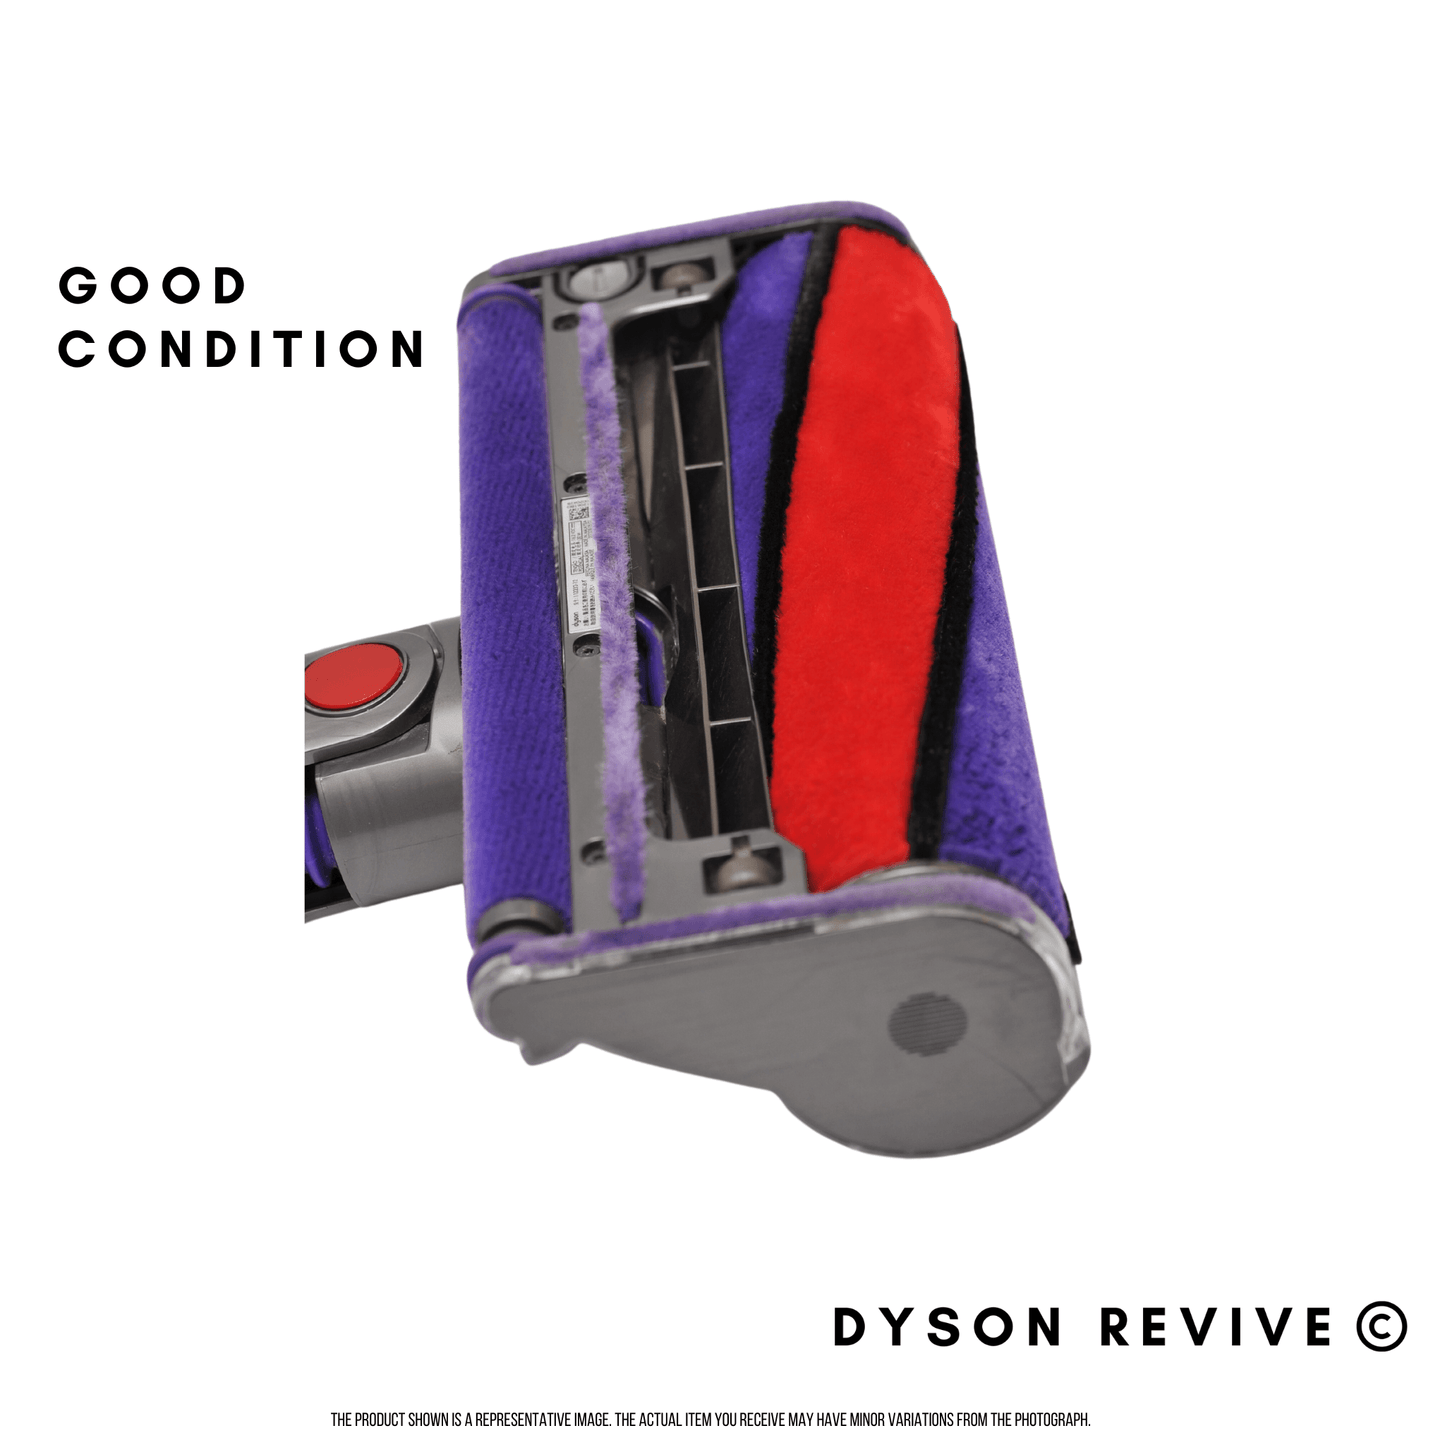 Genuine Dyson V10, V11 Refurbished Soft Roller Fluffy Cleaner Head also fits V8 - Dyson Revive